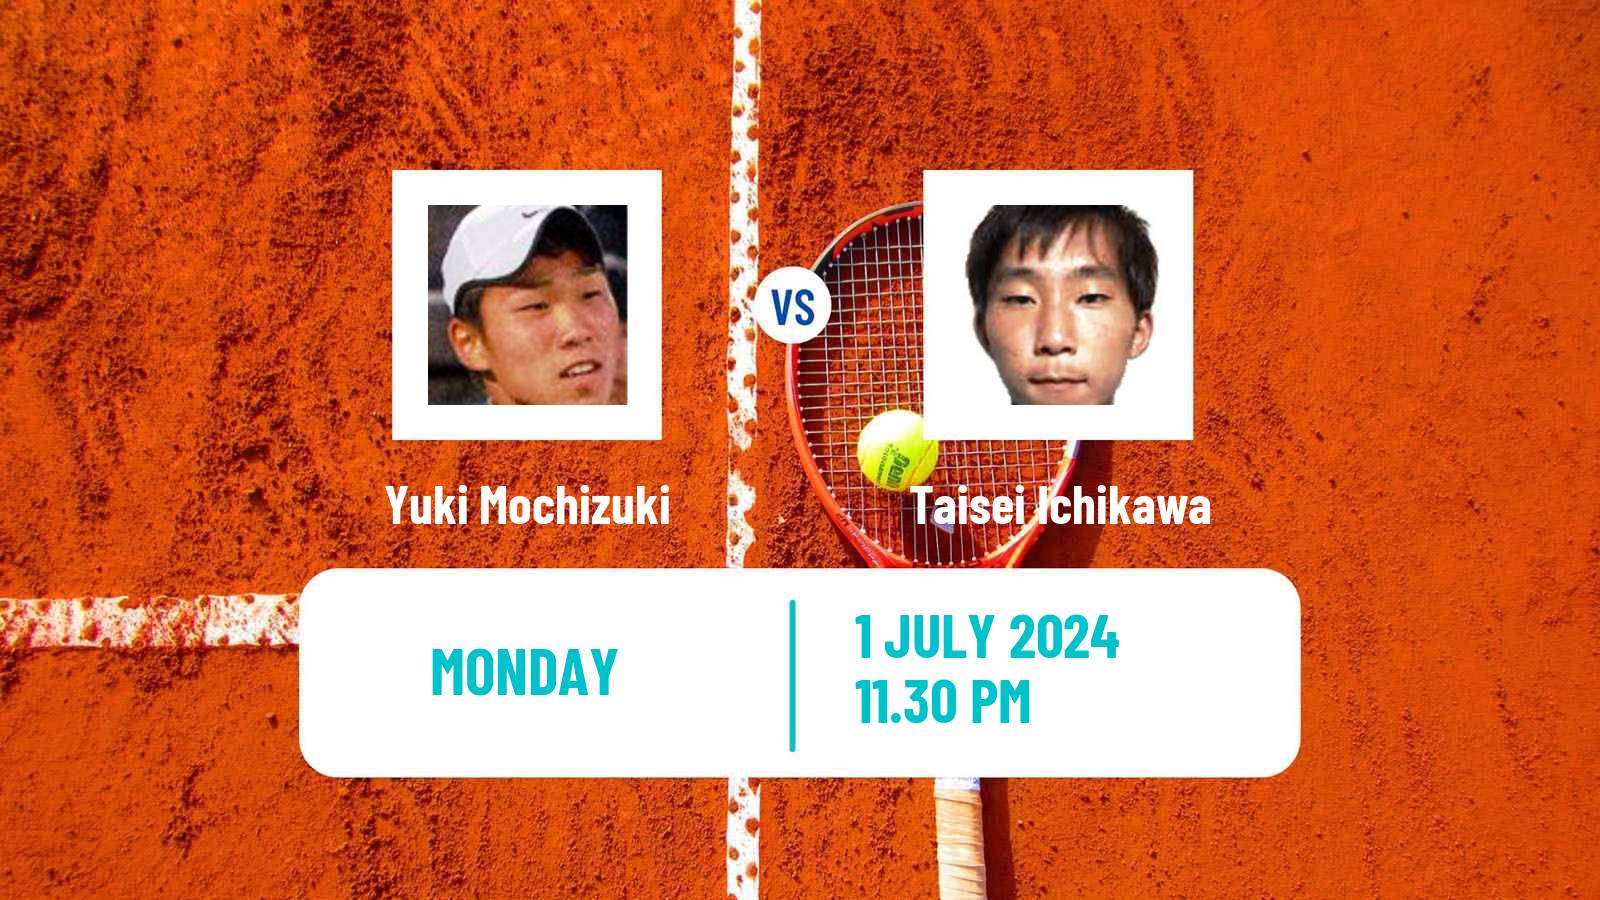 Tennis ITF M15 Tokyo Men Yuki Mochizuki - Taisei Ichikawa